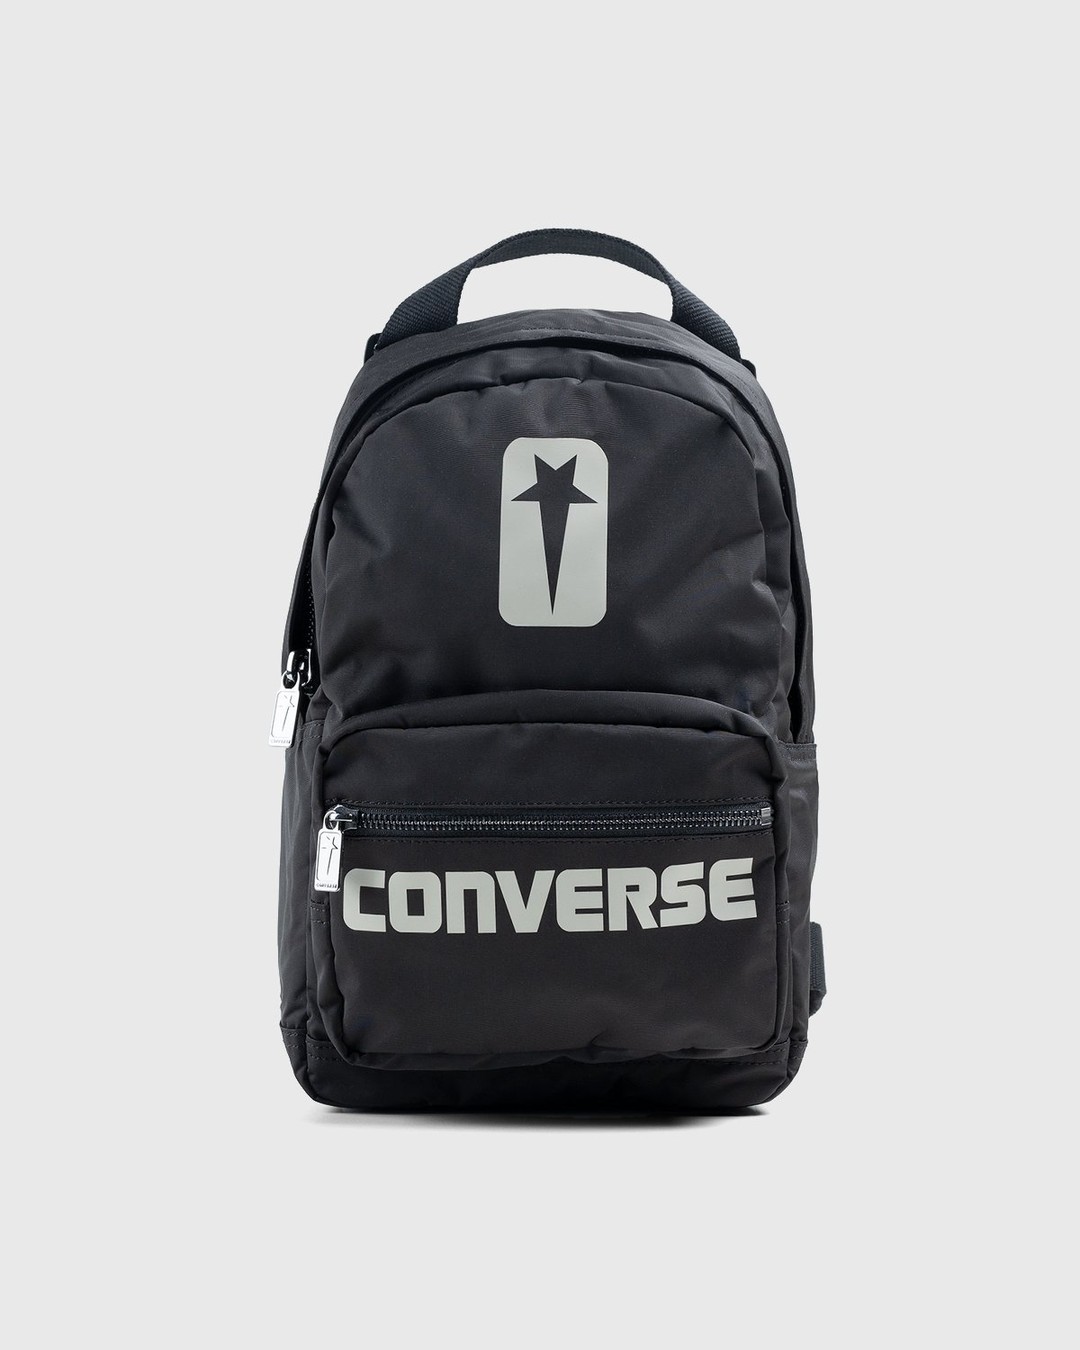 Converse x Rick Owens – DRKSHDW Backpack Black/Pelican - Bags - Black - Image 1